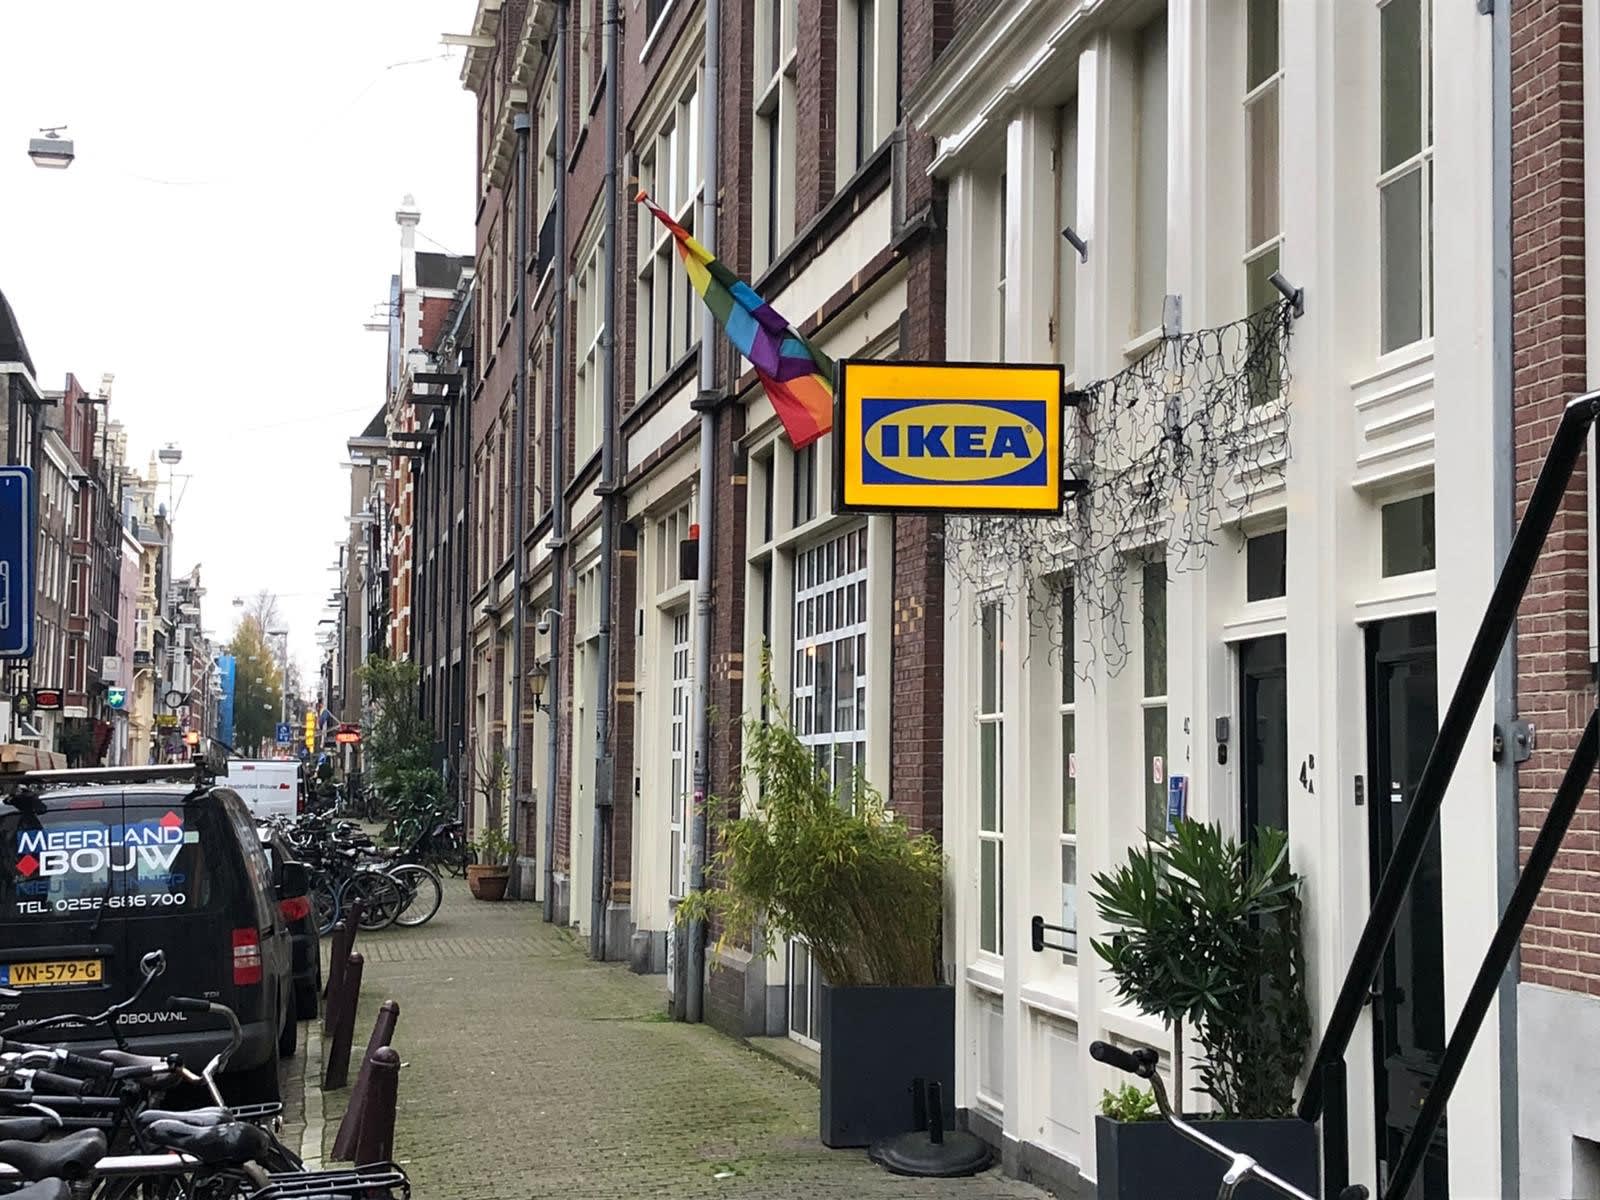 Oudste gaybar van Amsterdam 'omgetoverd' tot IKEA: 'Vrees dat we de coronacrisis niet overleven'